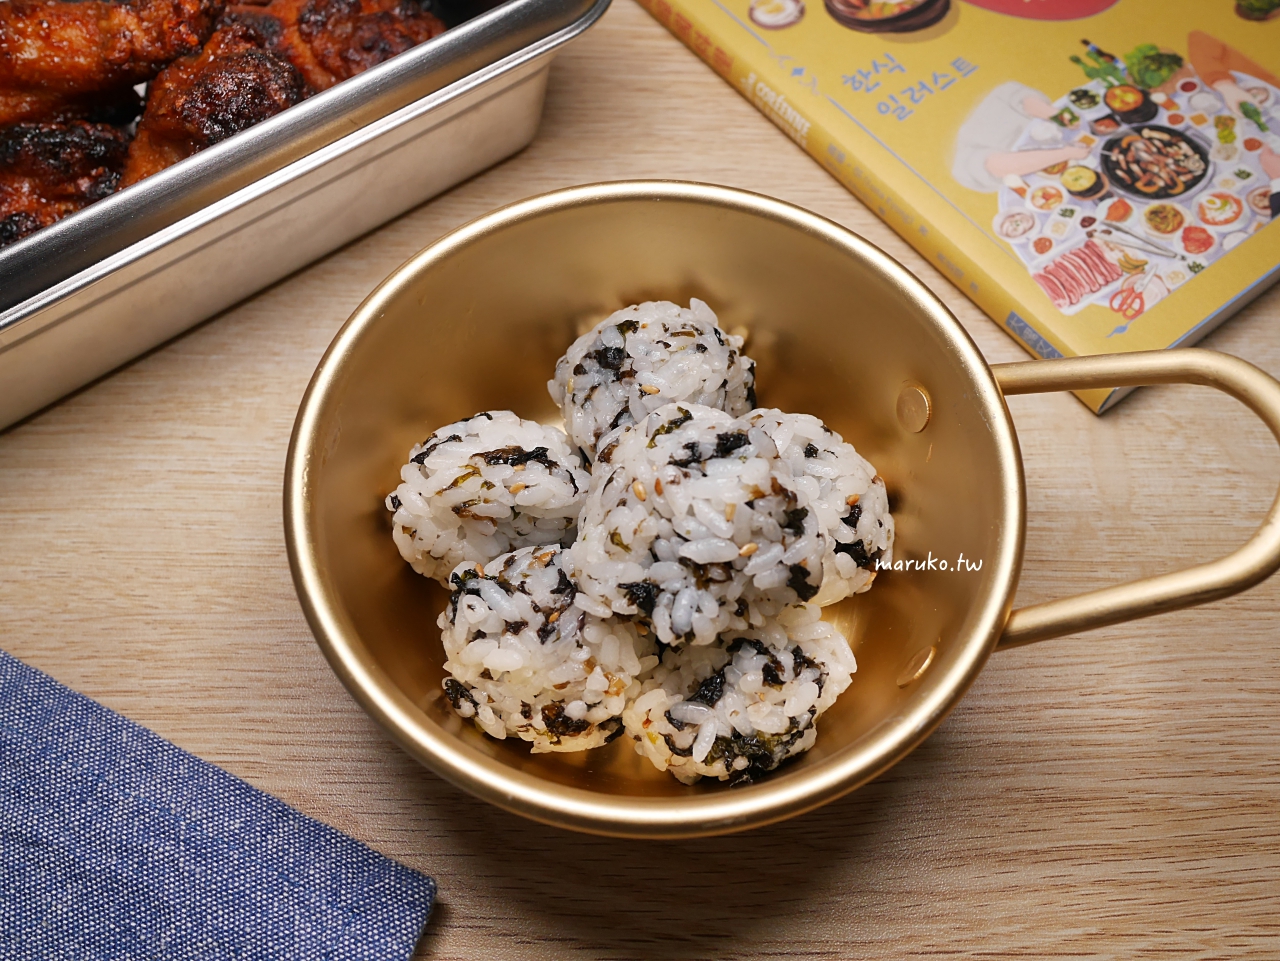 【食譜】韓式手作飯糰 芝麻炒海苔酥用法 簡單白飯拌飯做法